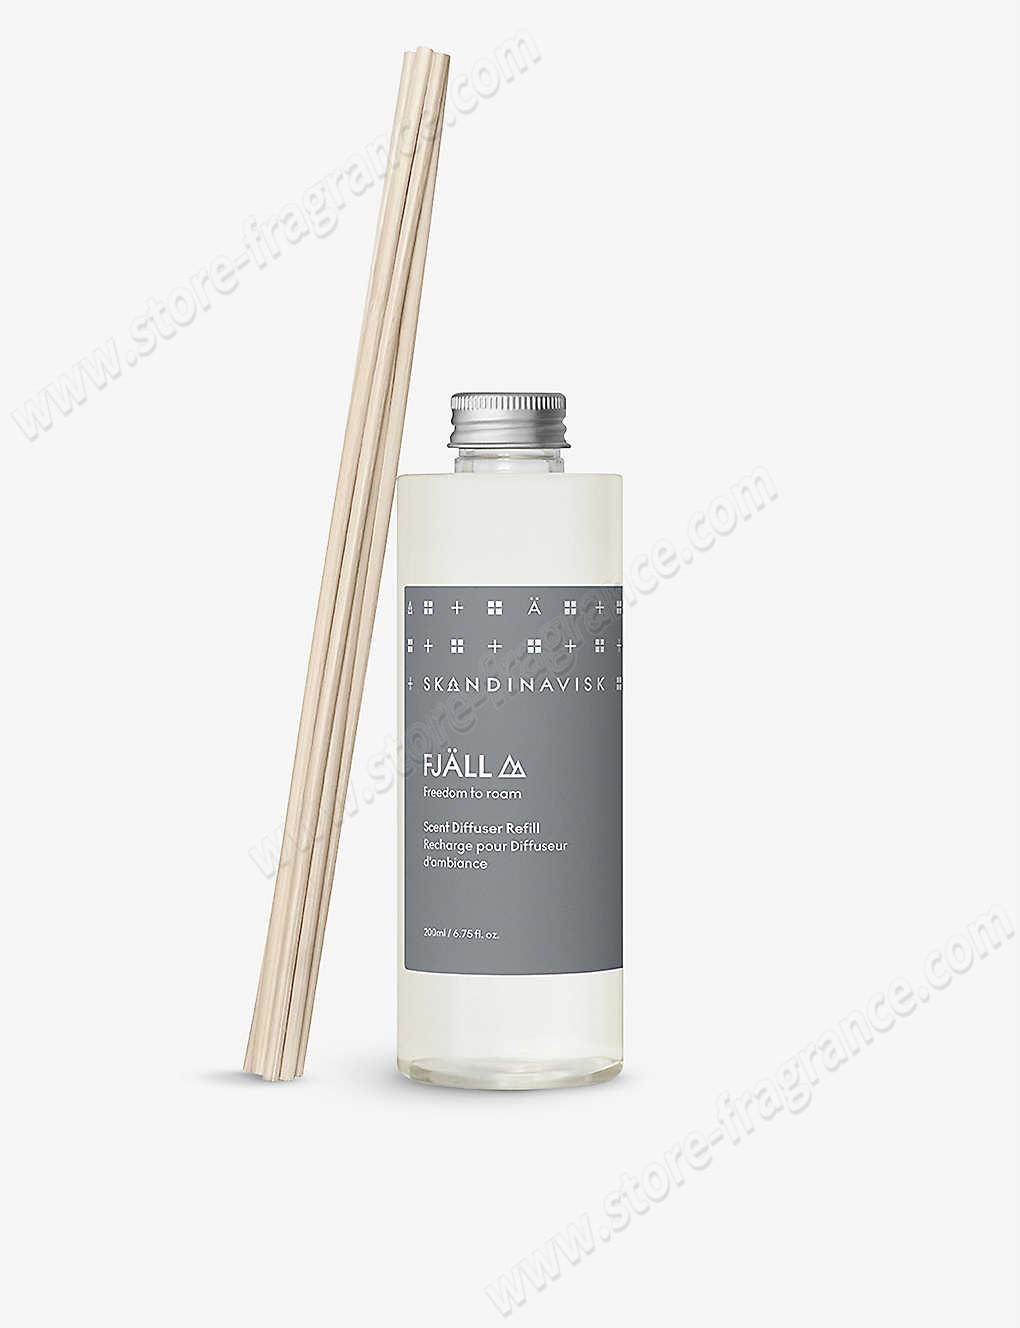 SKANDINAVISK/Fjall scented reed diffuser refill 200ml Limit Offer - -0